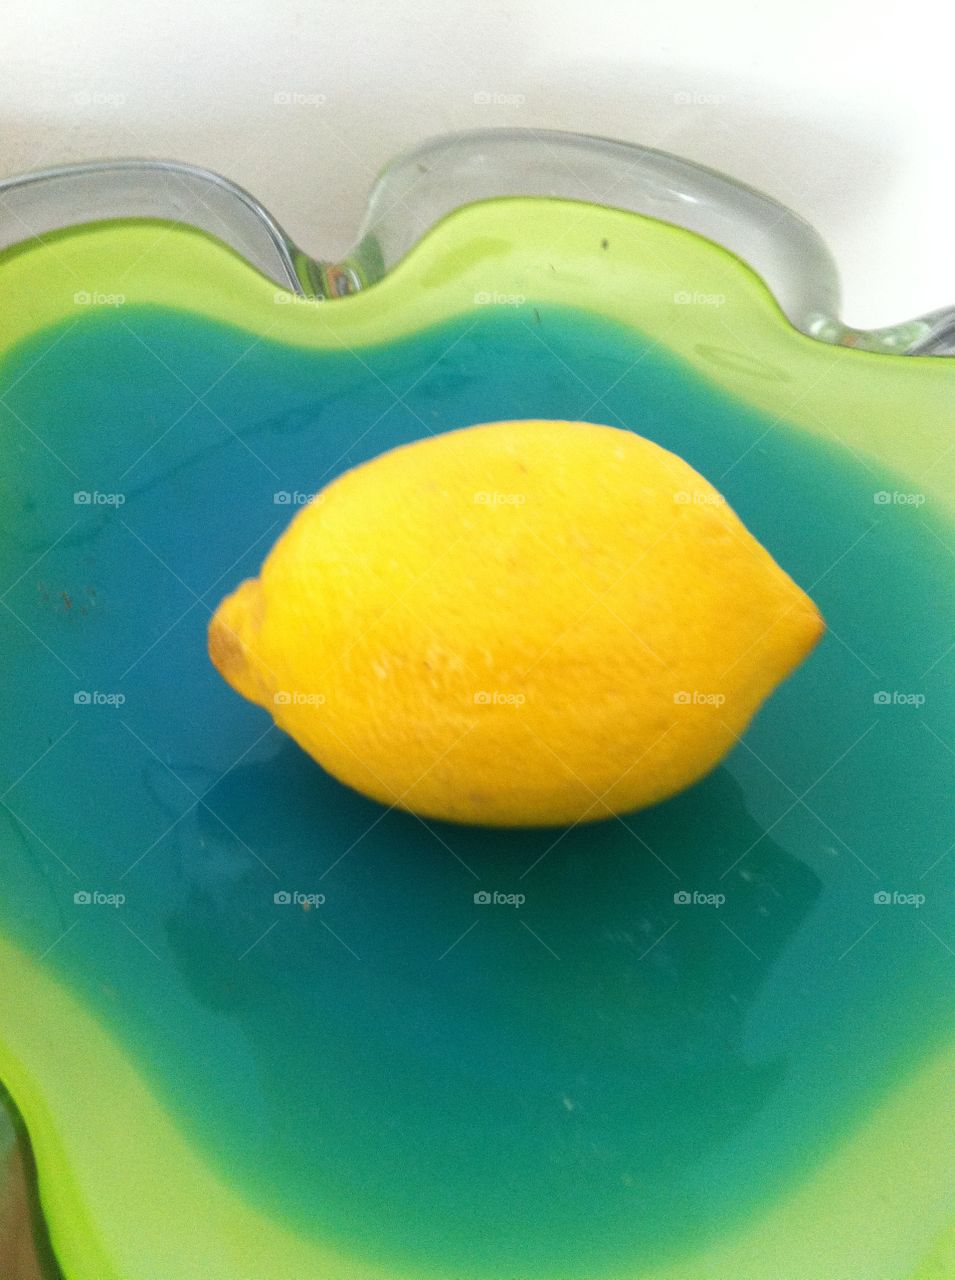 Lemon. Whole lemon 